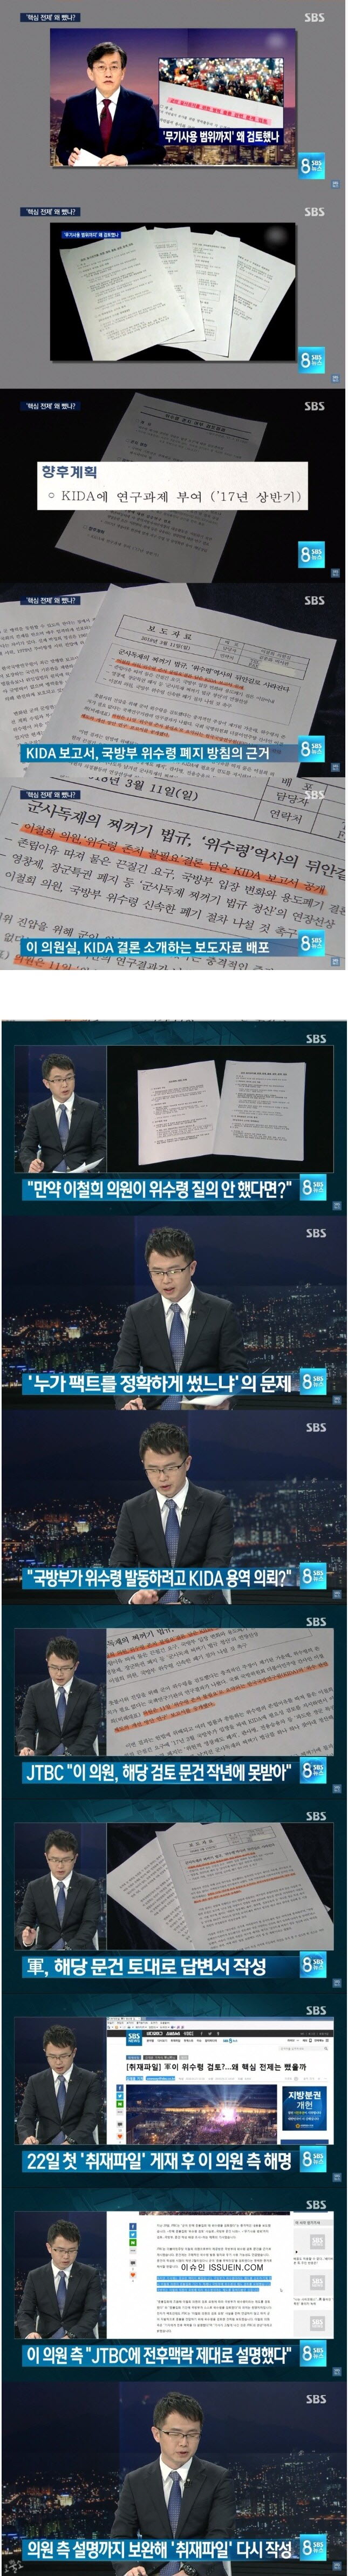 연일 JTBC 저격하는 SBS